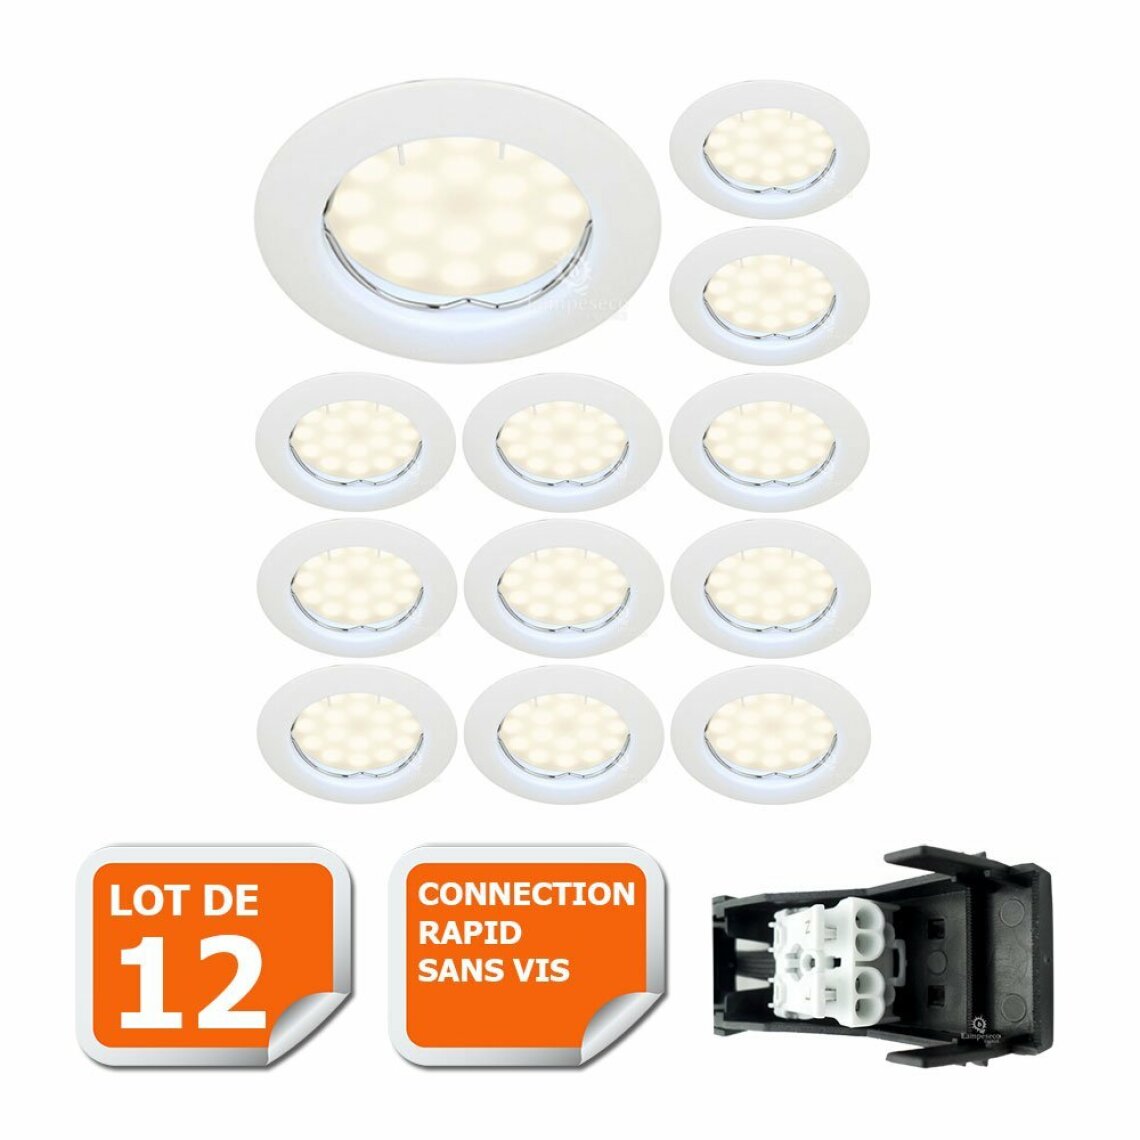 Lampesecoenergie - LOT DE 12 SPOT LED COMPLETE RONDE FIXE eq. 50W BLANC CHAUD - Boîtes d'encastrement